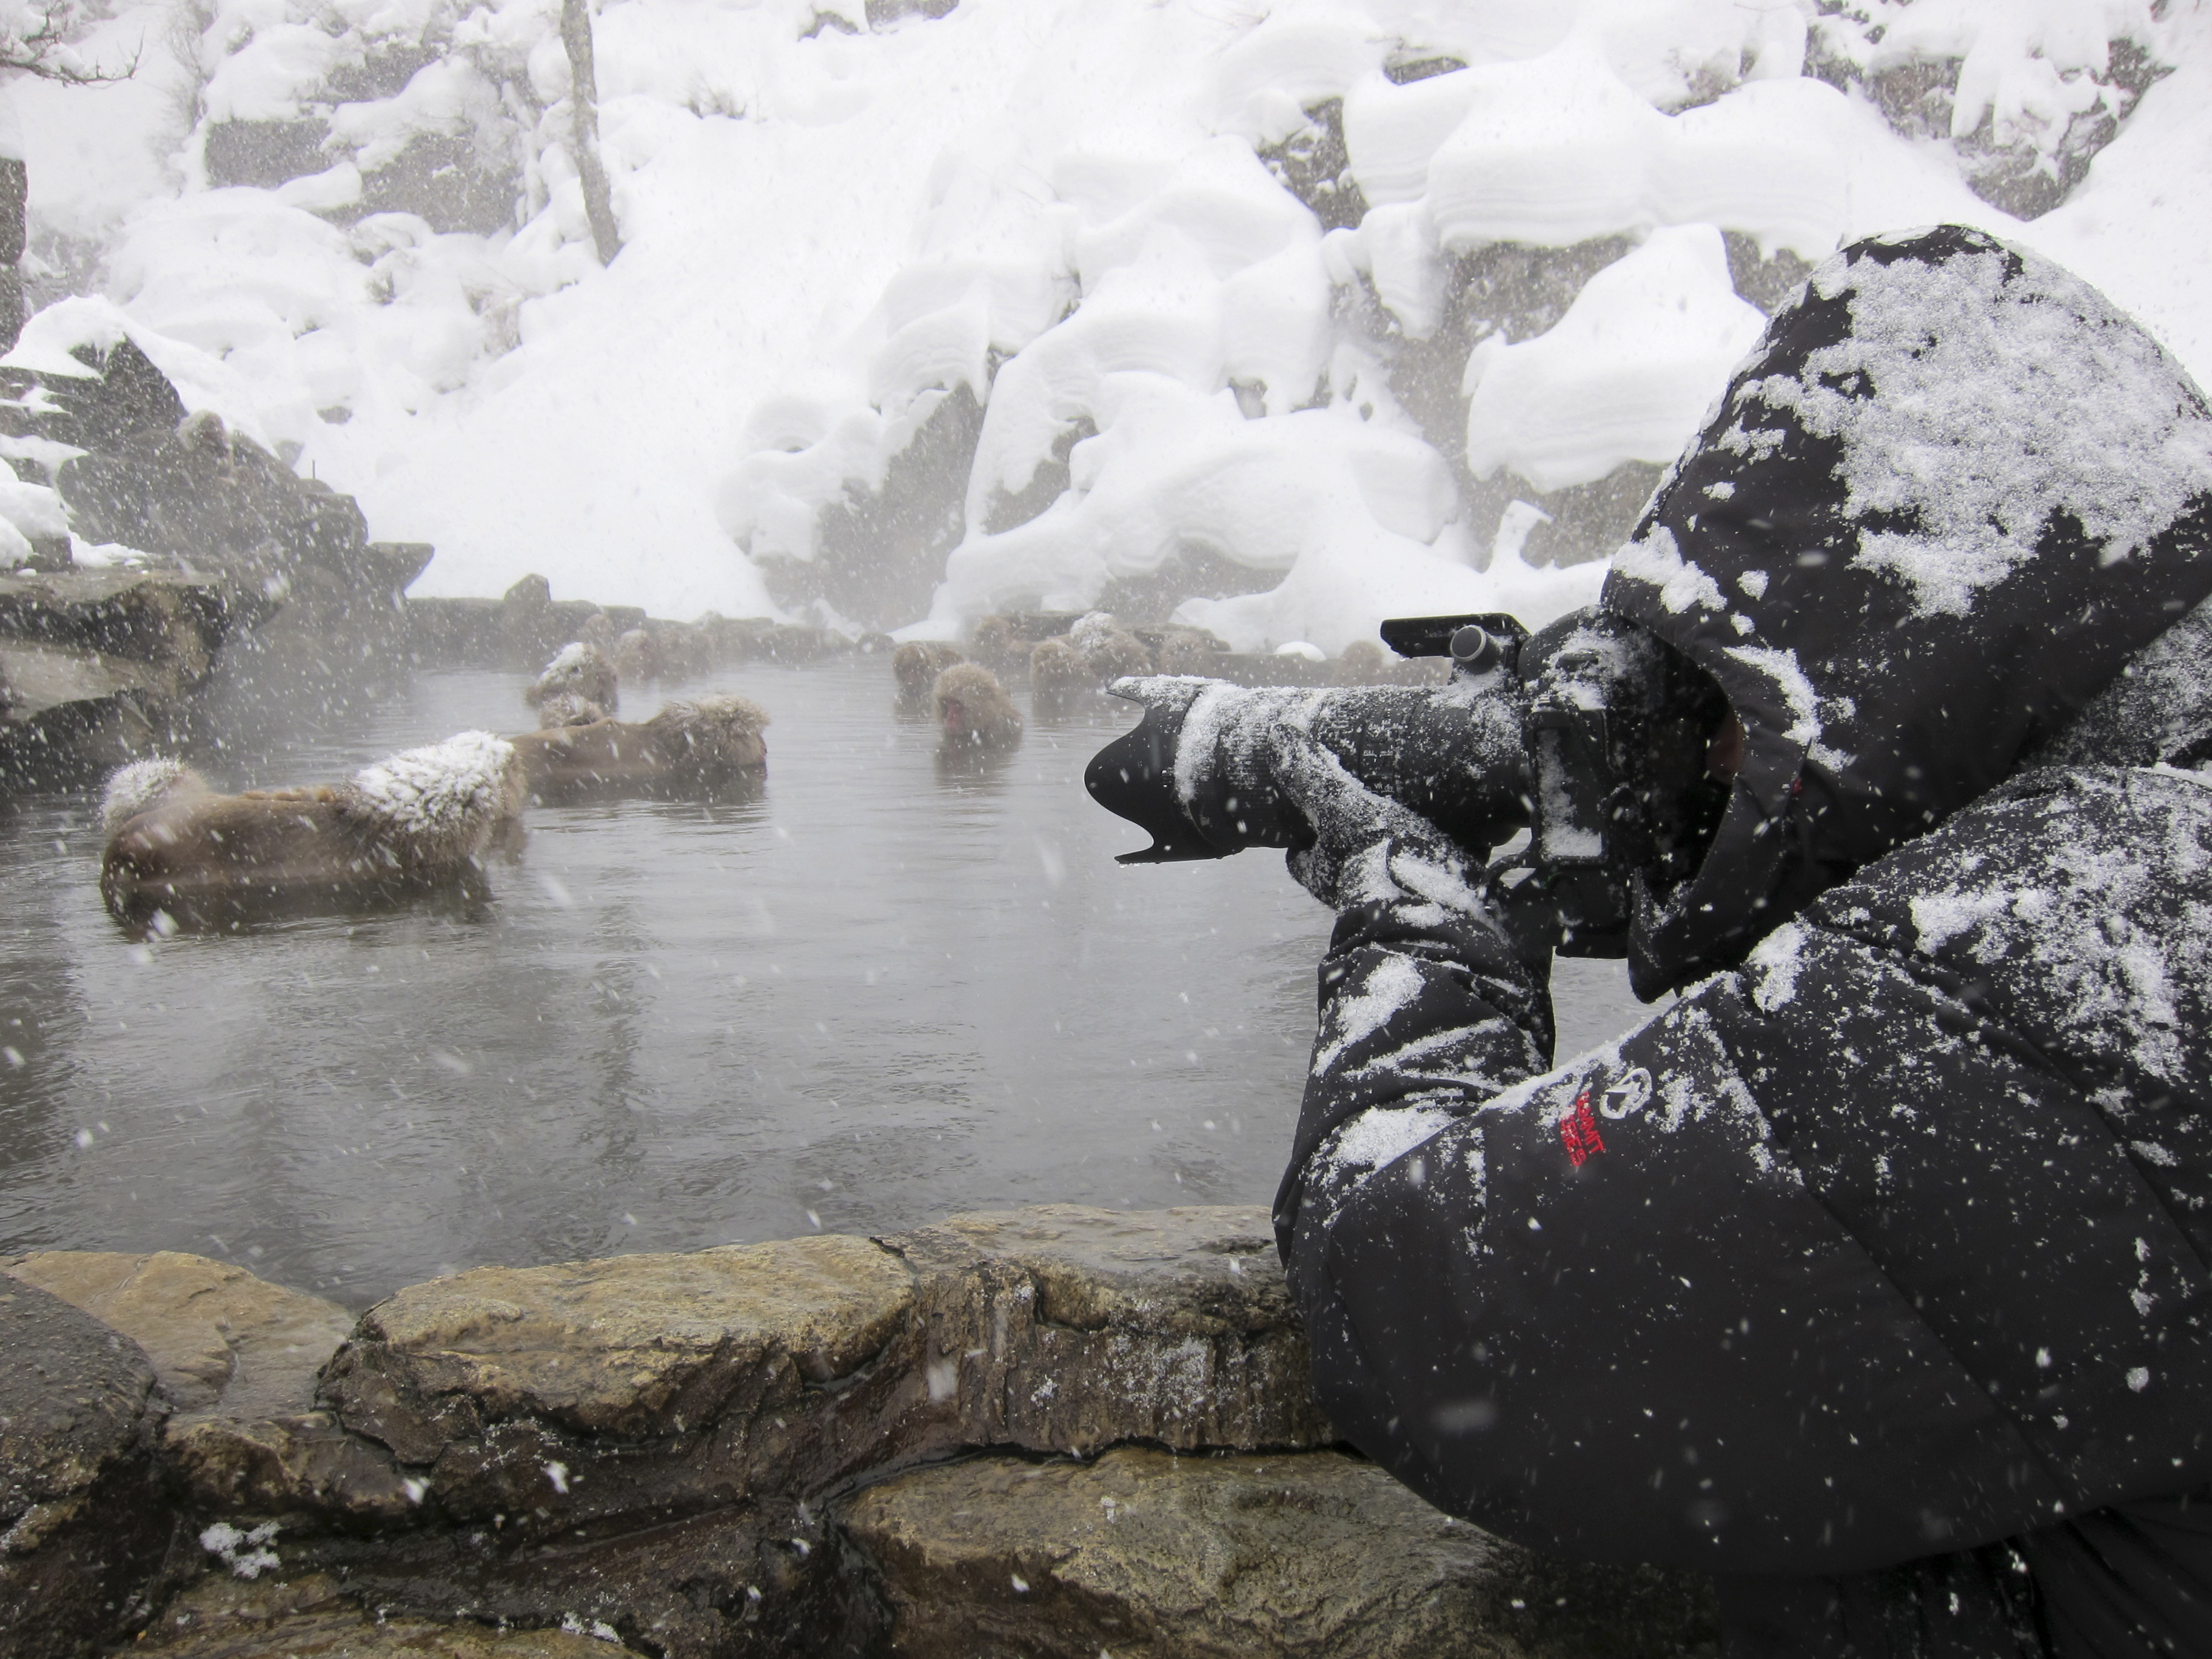 Snow Money - Photographer Marsel van Oosten at work